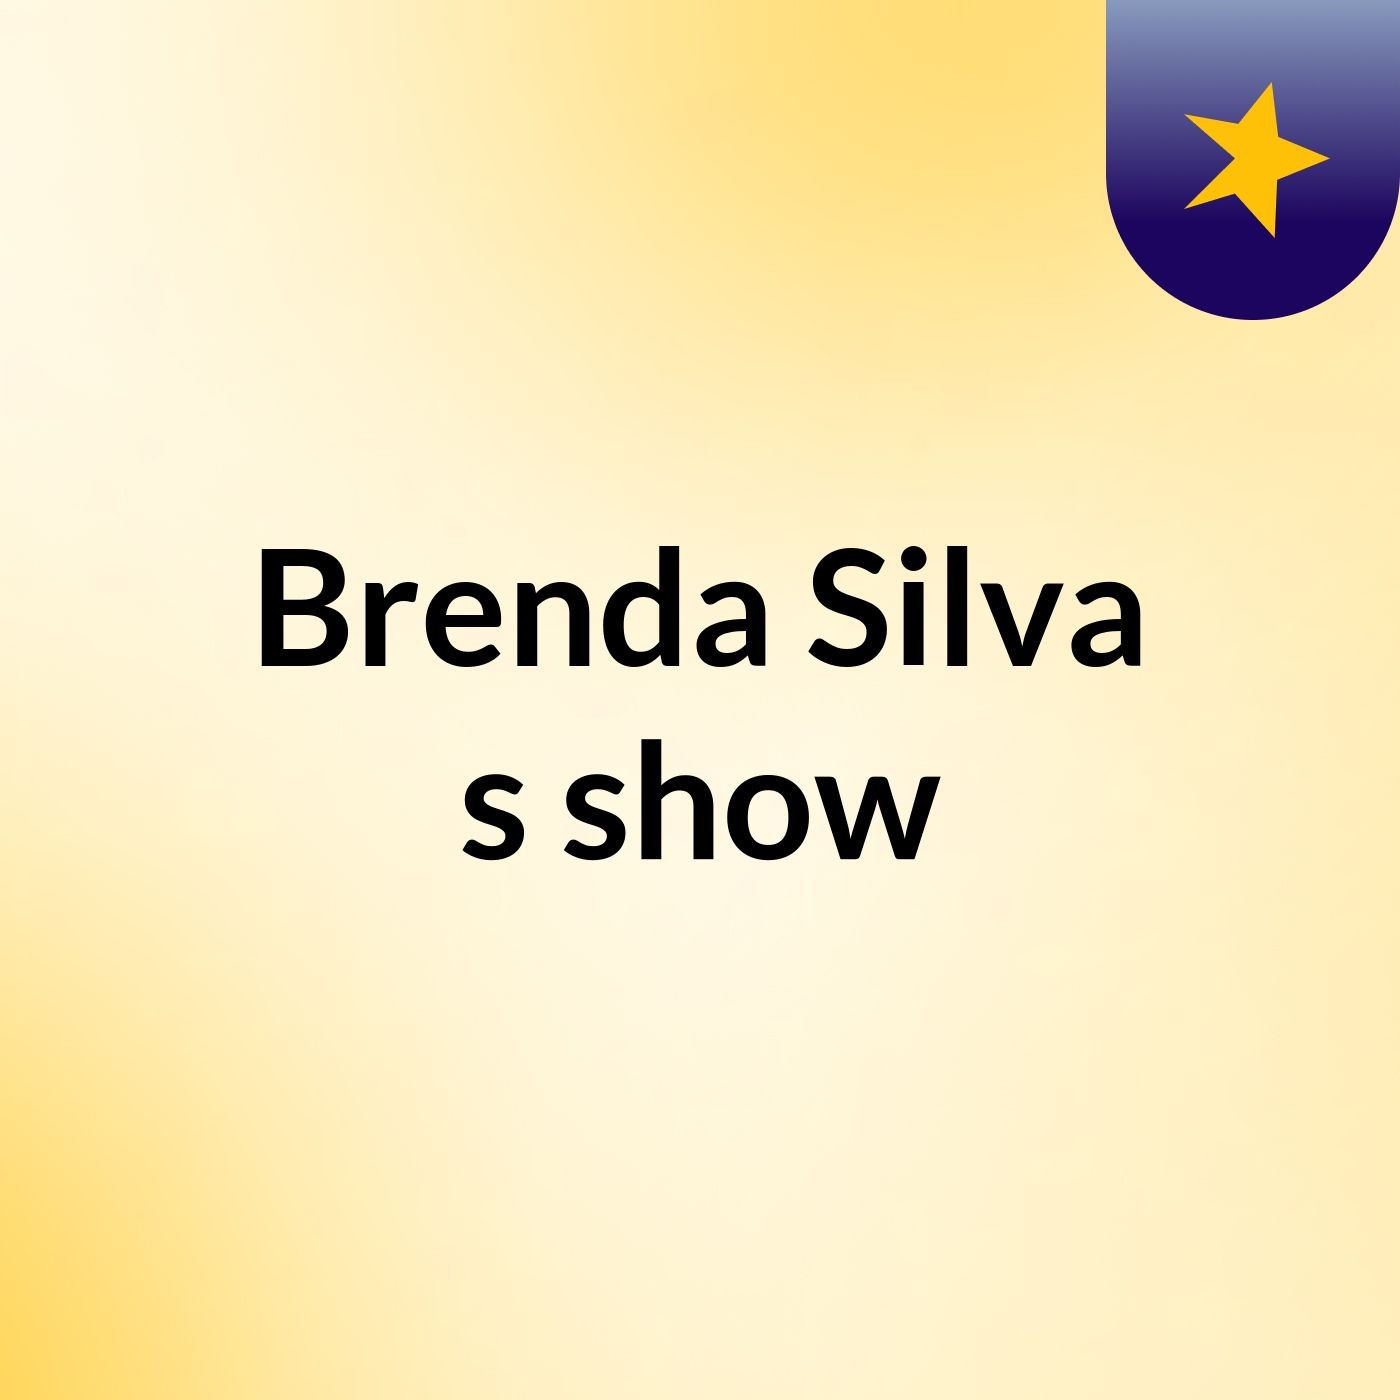 Brenda Silva's show